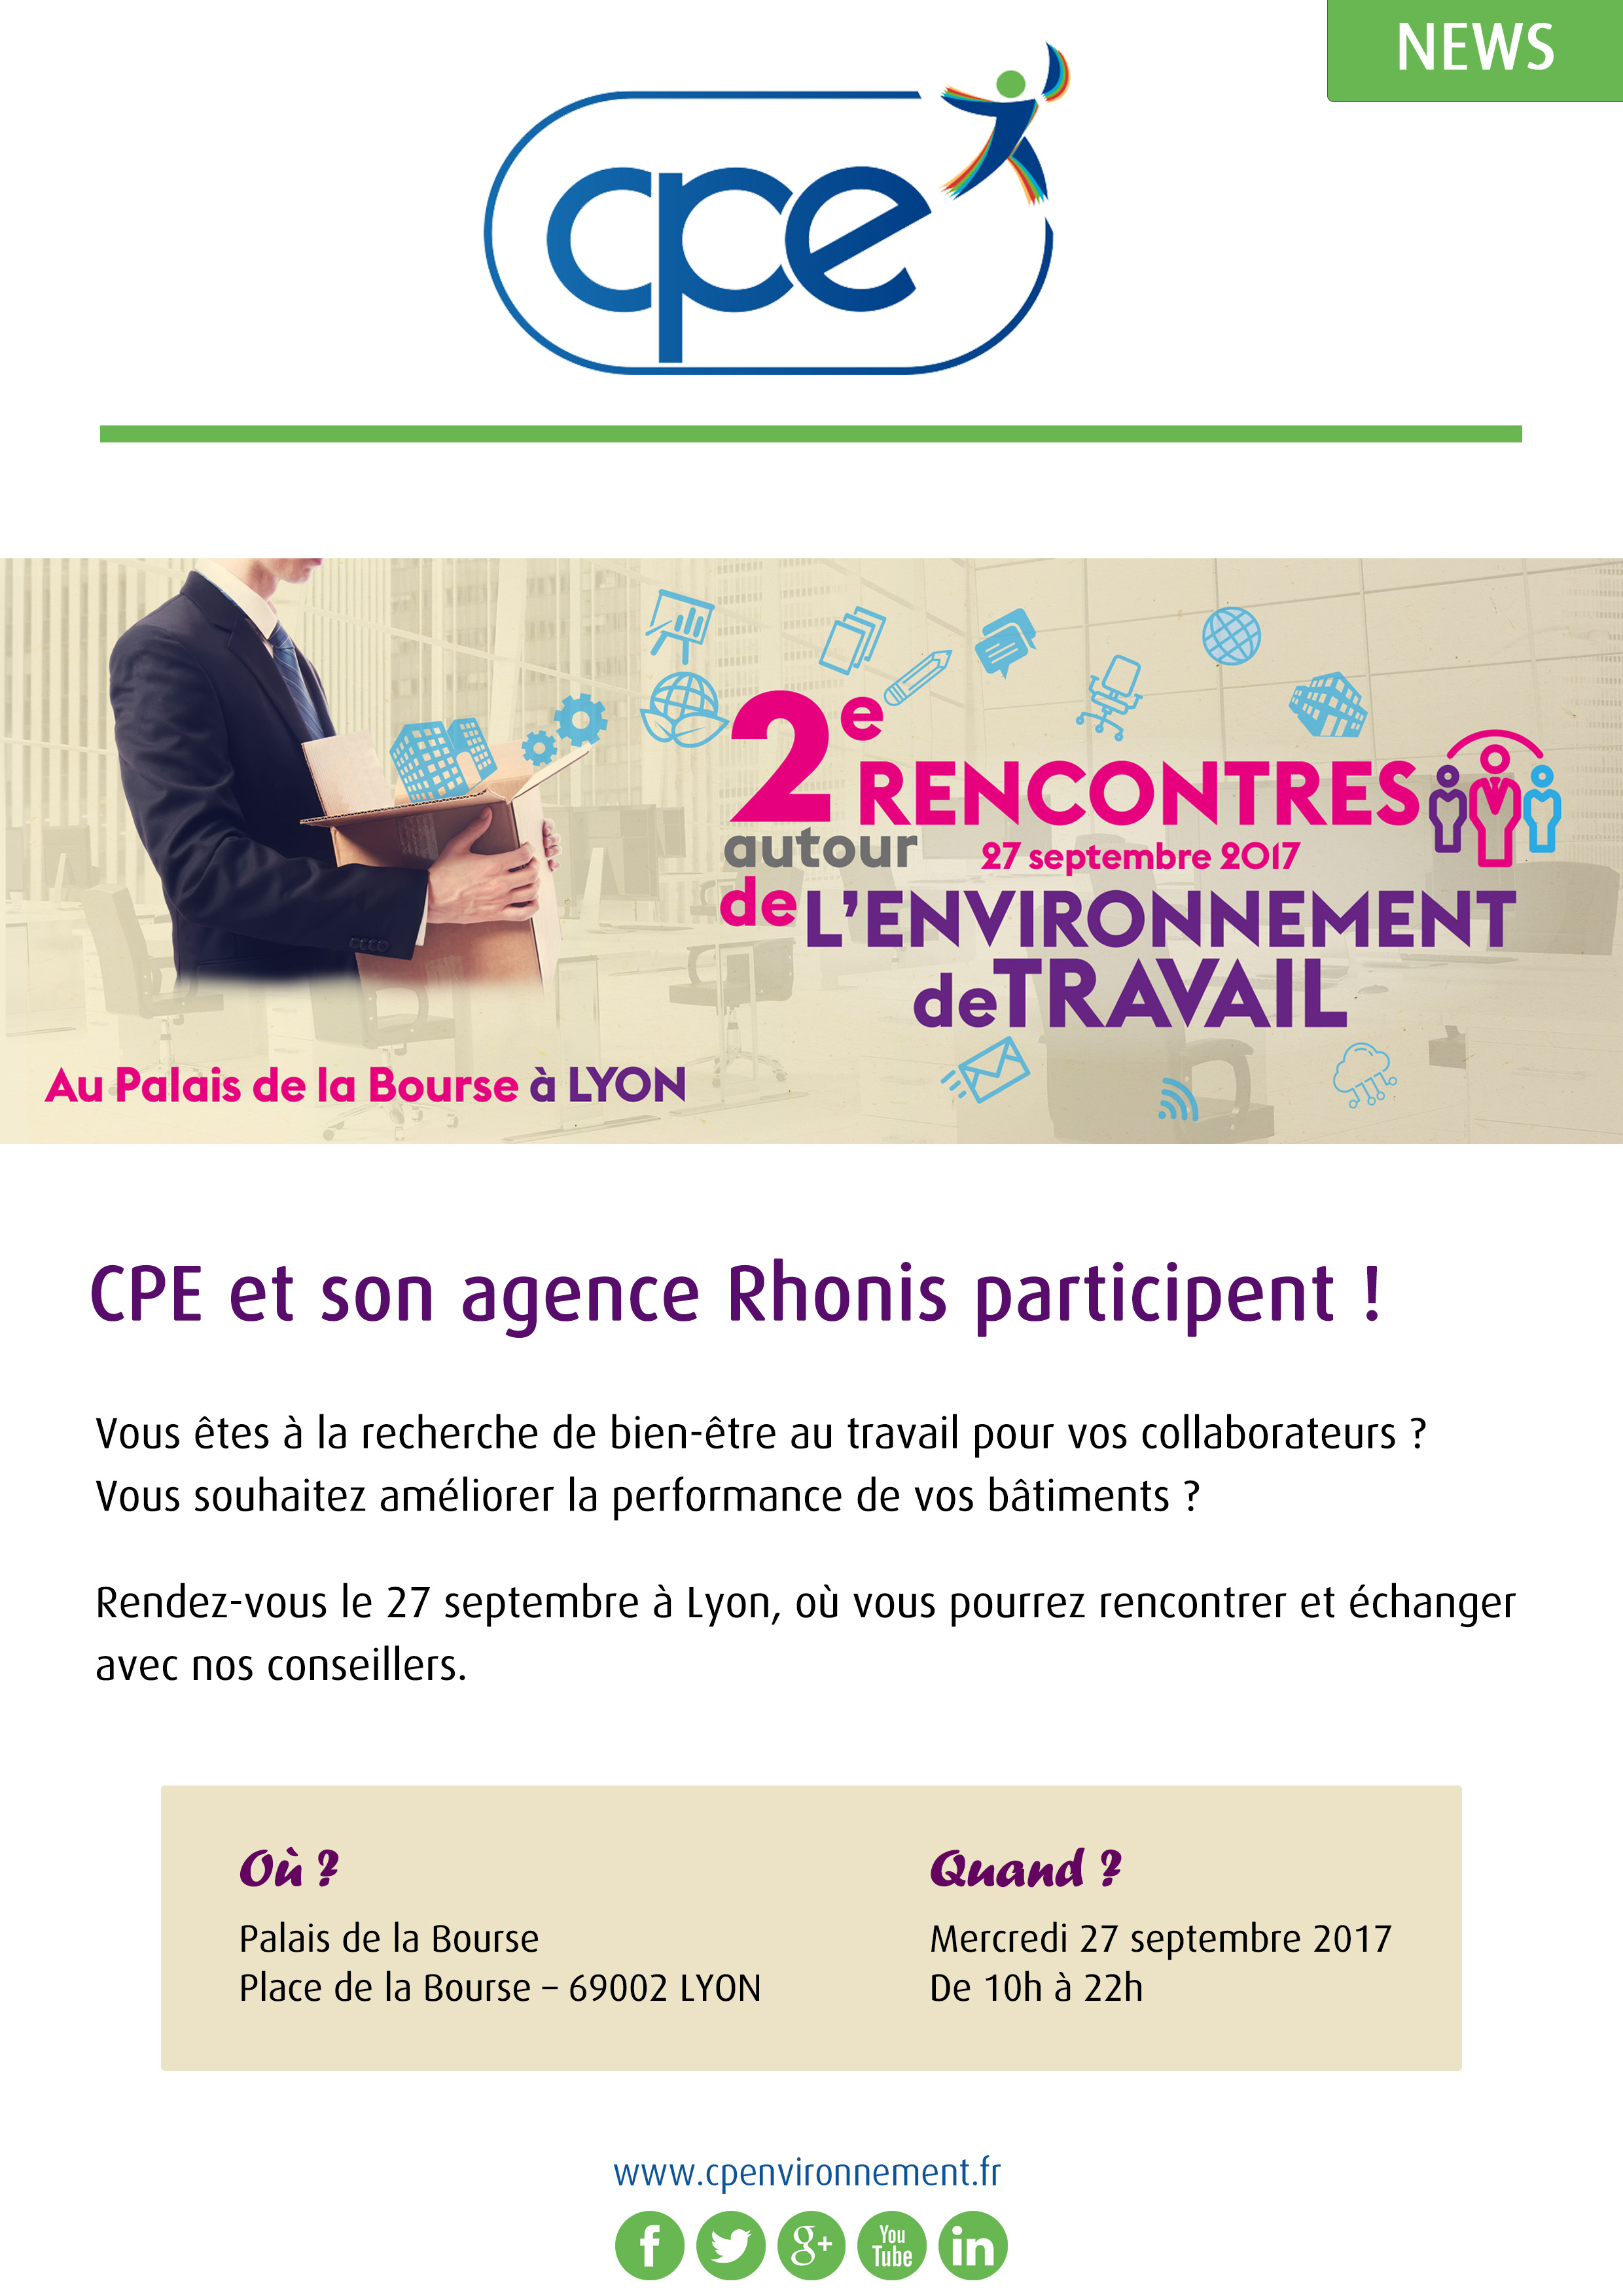 CPE participe aux Rencontres autour de l'Environnement de Travail le 27 septembre à Lyon !